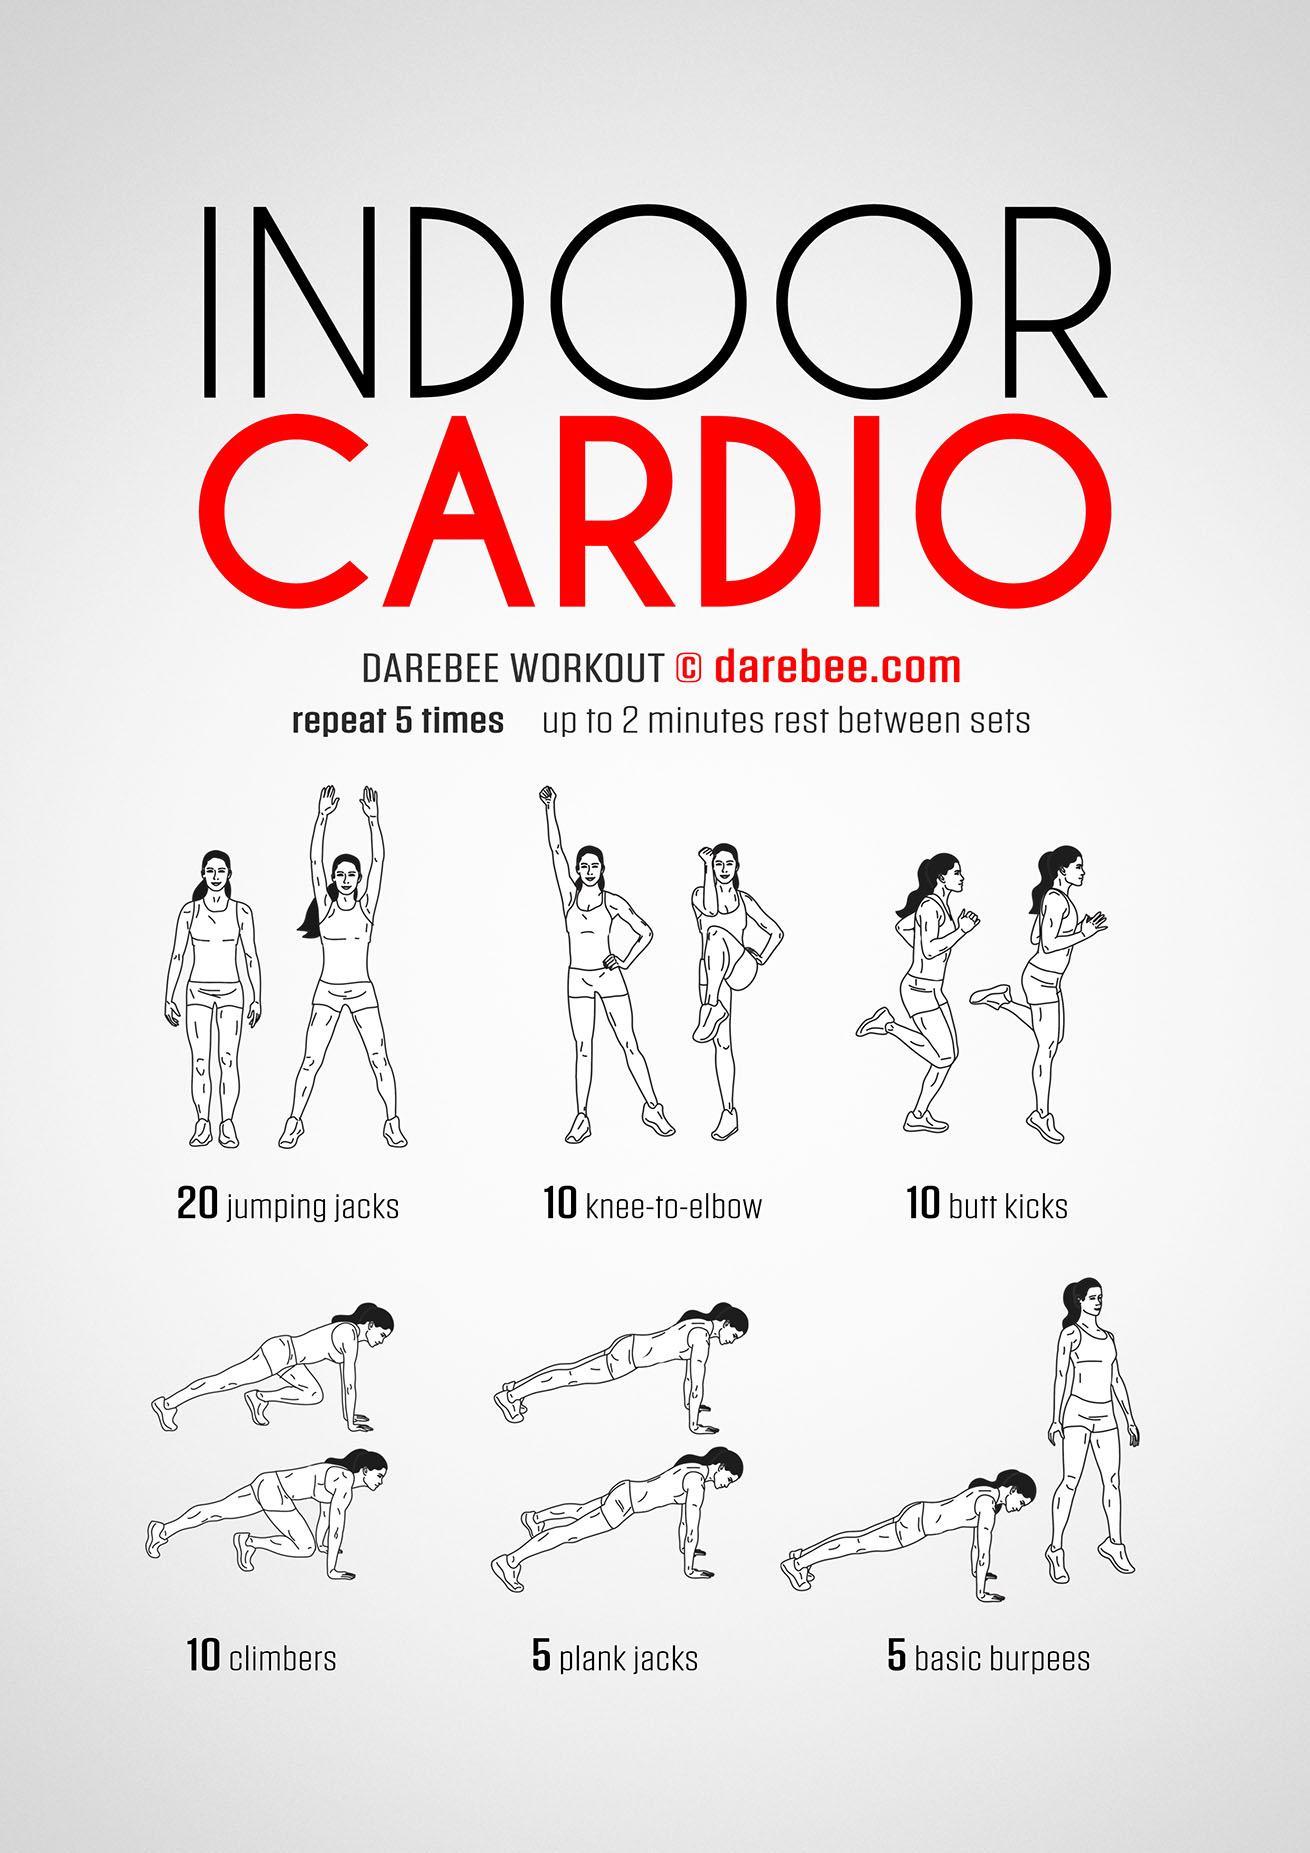 Cardio workout routines